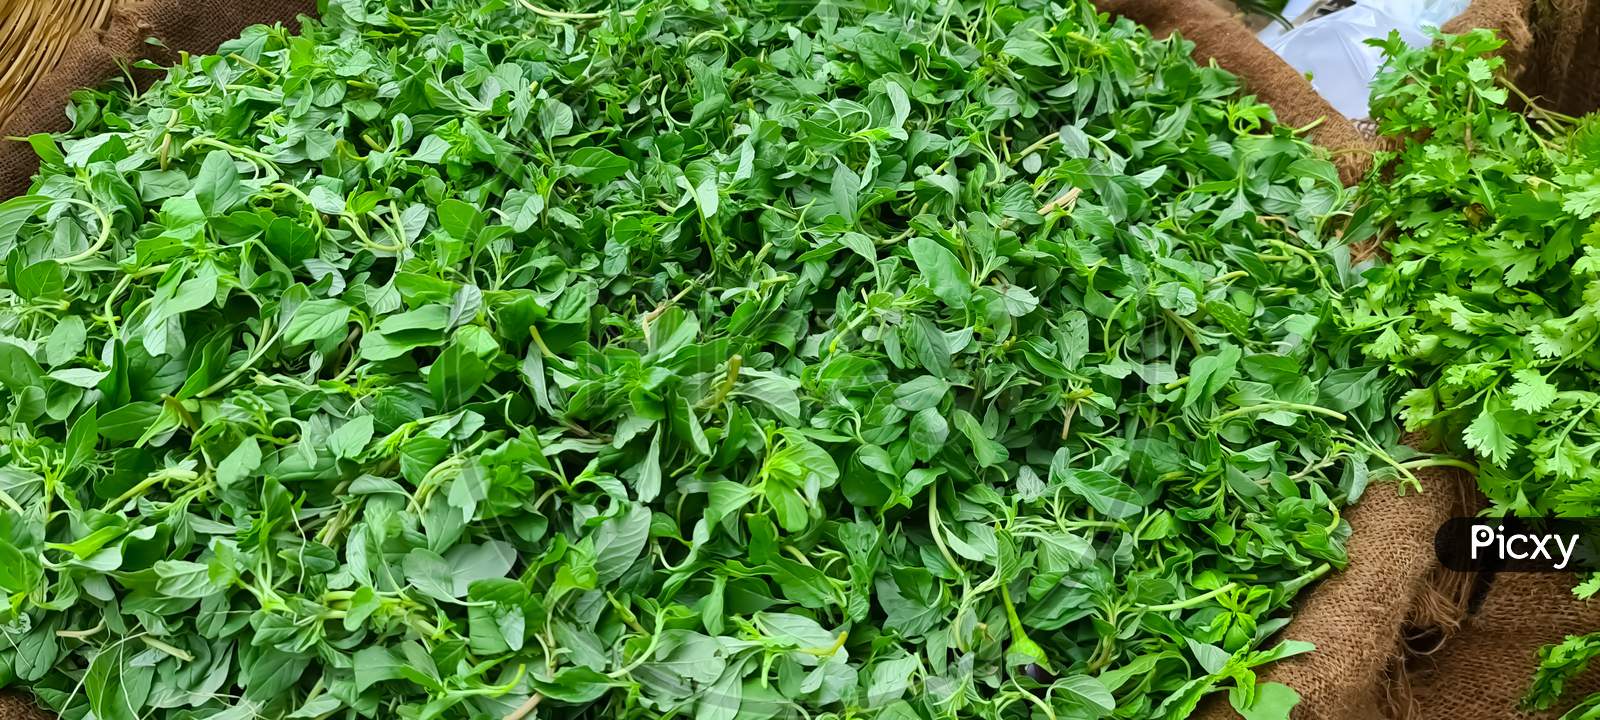 Amaranthus leaves